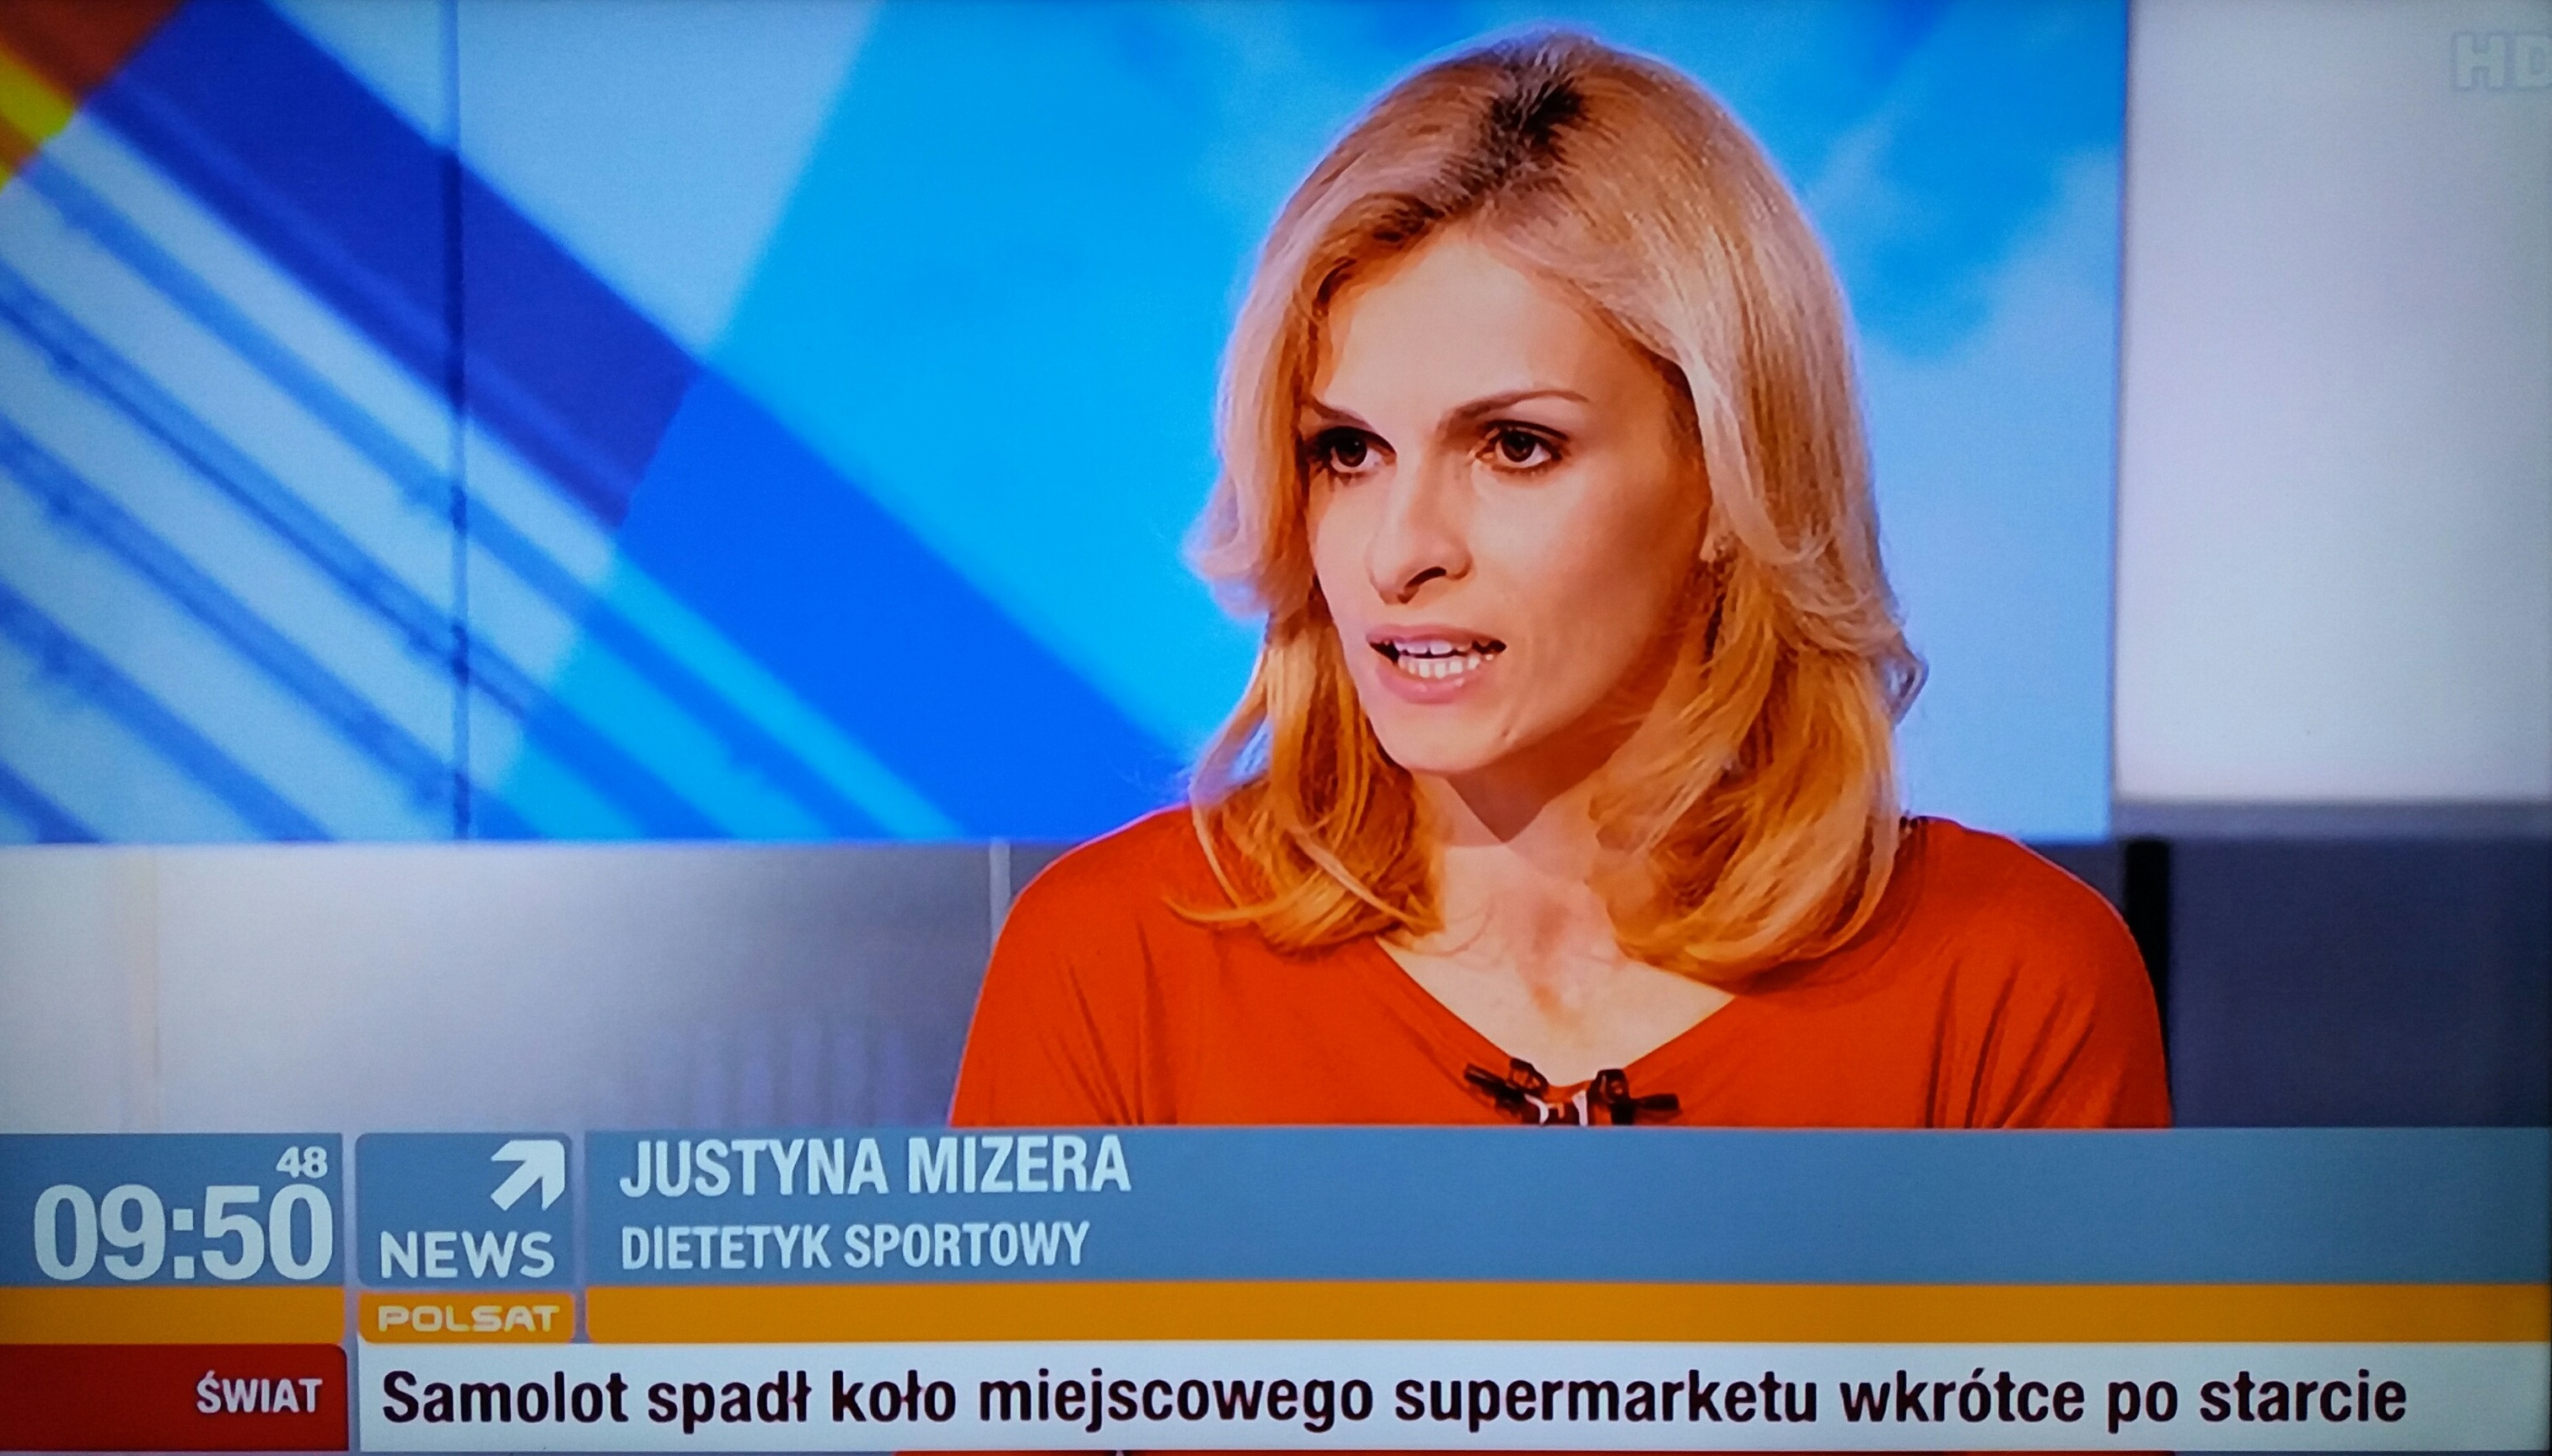 Dietetyk sportowy Justyna Mizera polsat